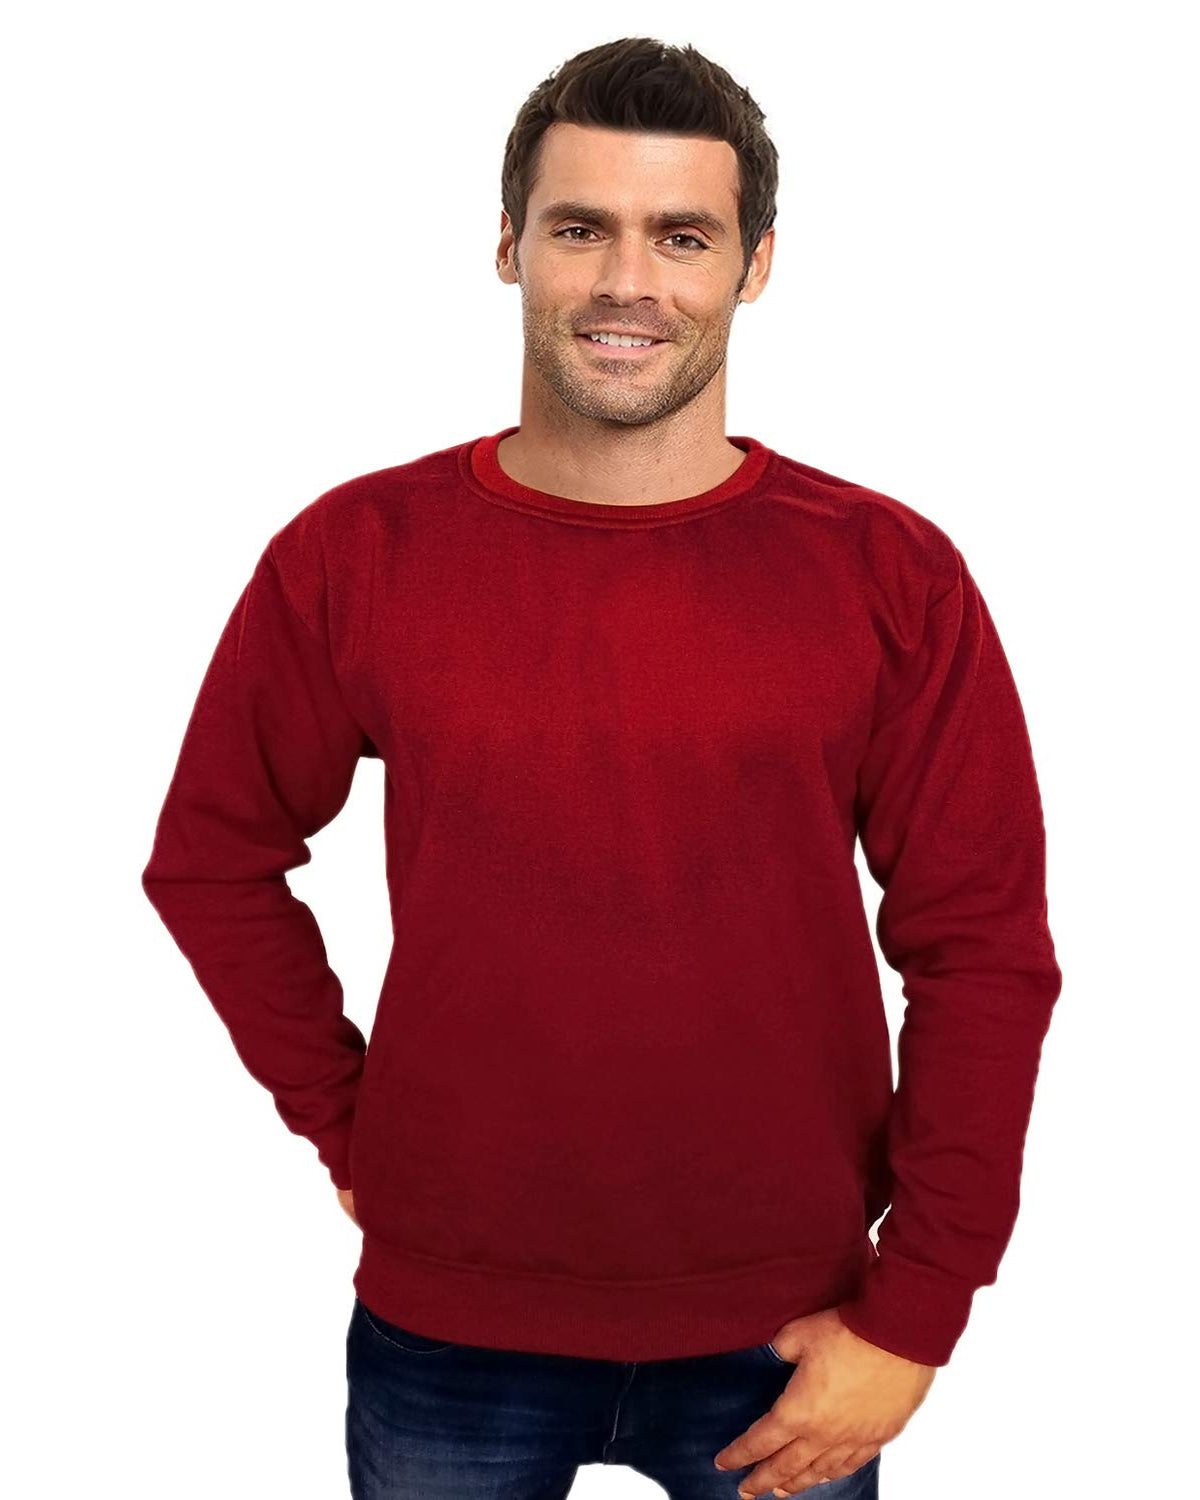 Prokick Men's Round Neck Sweatshirt - Maroon - Best Price online Prokicksports.com